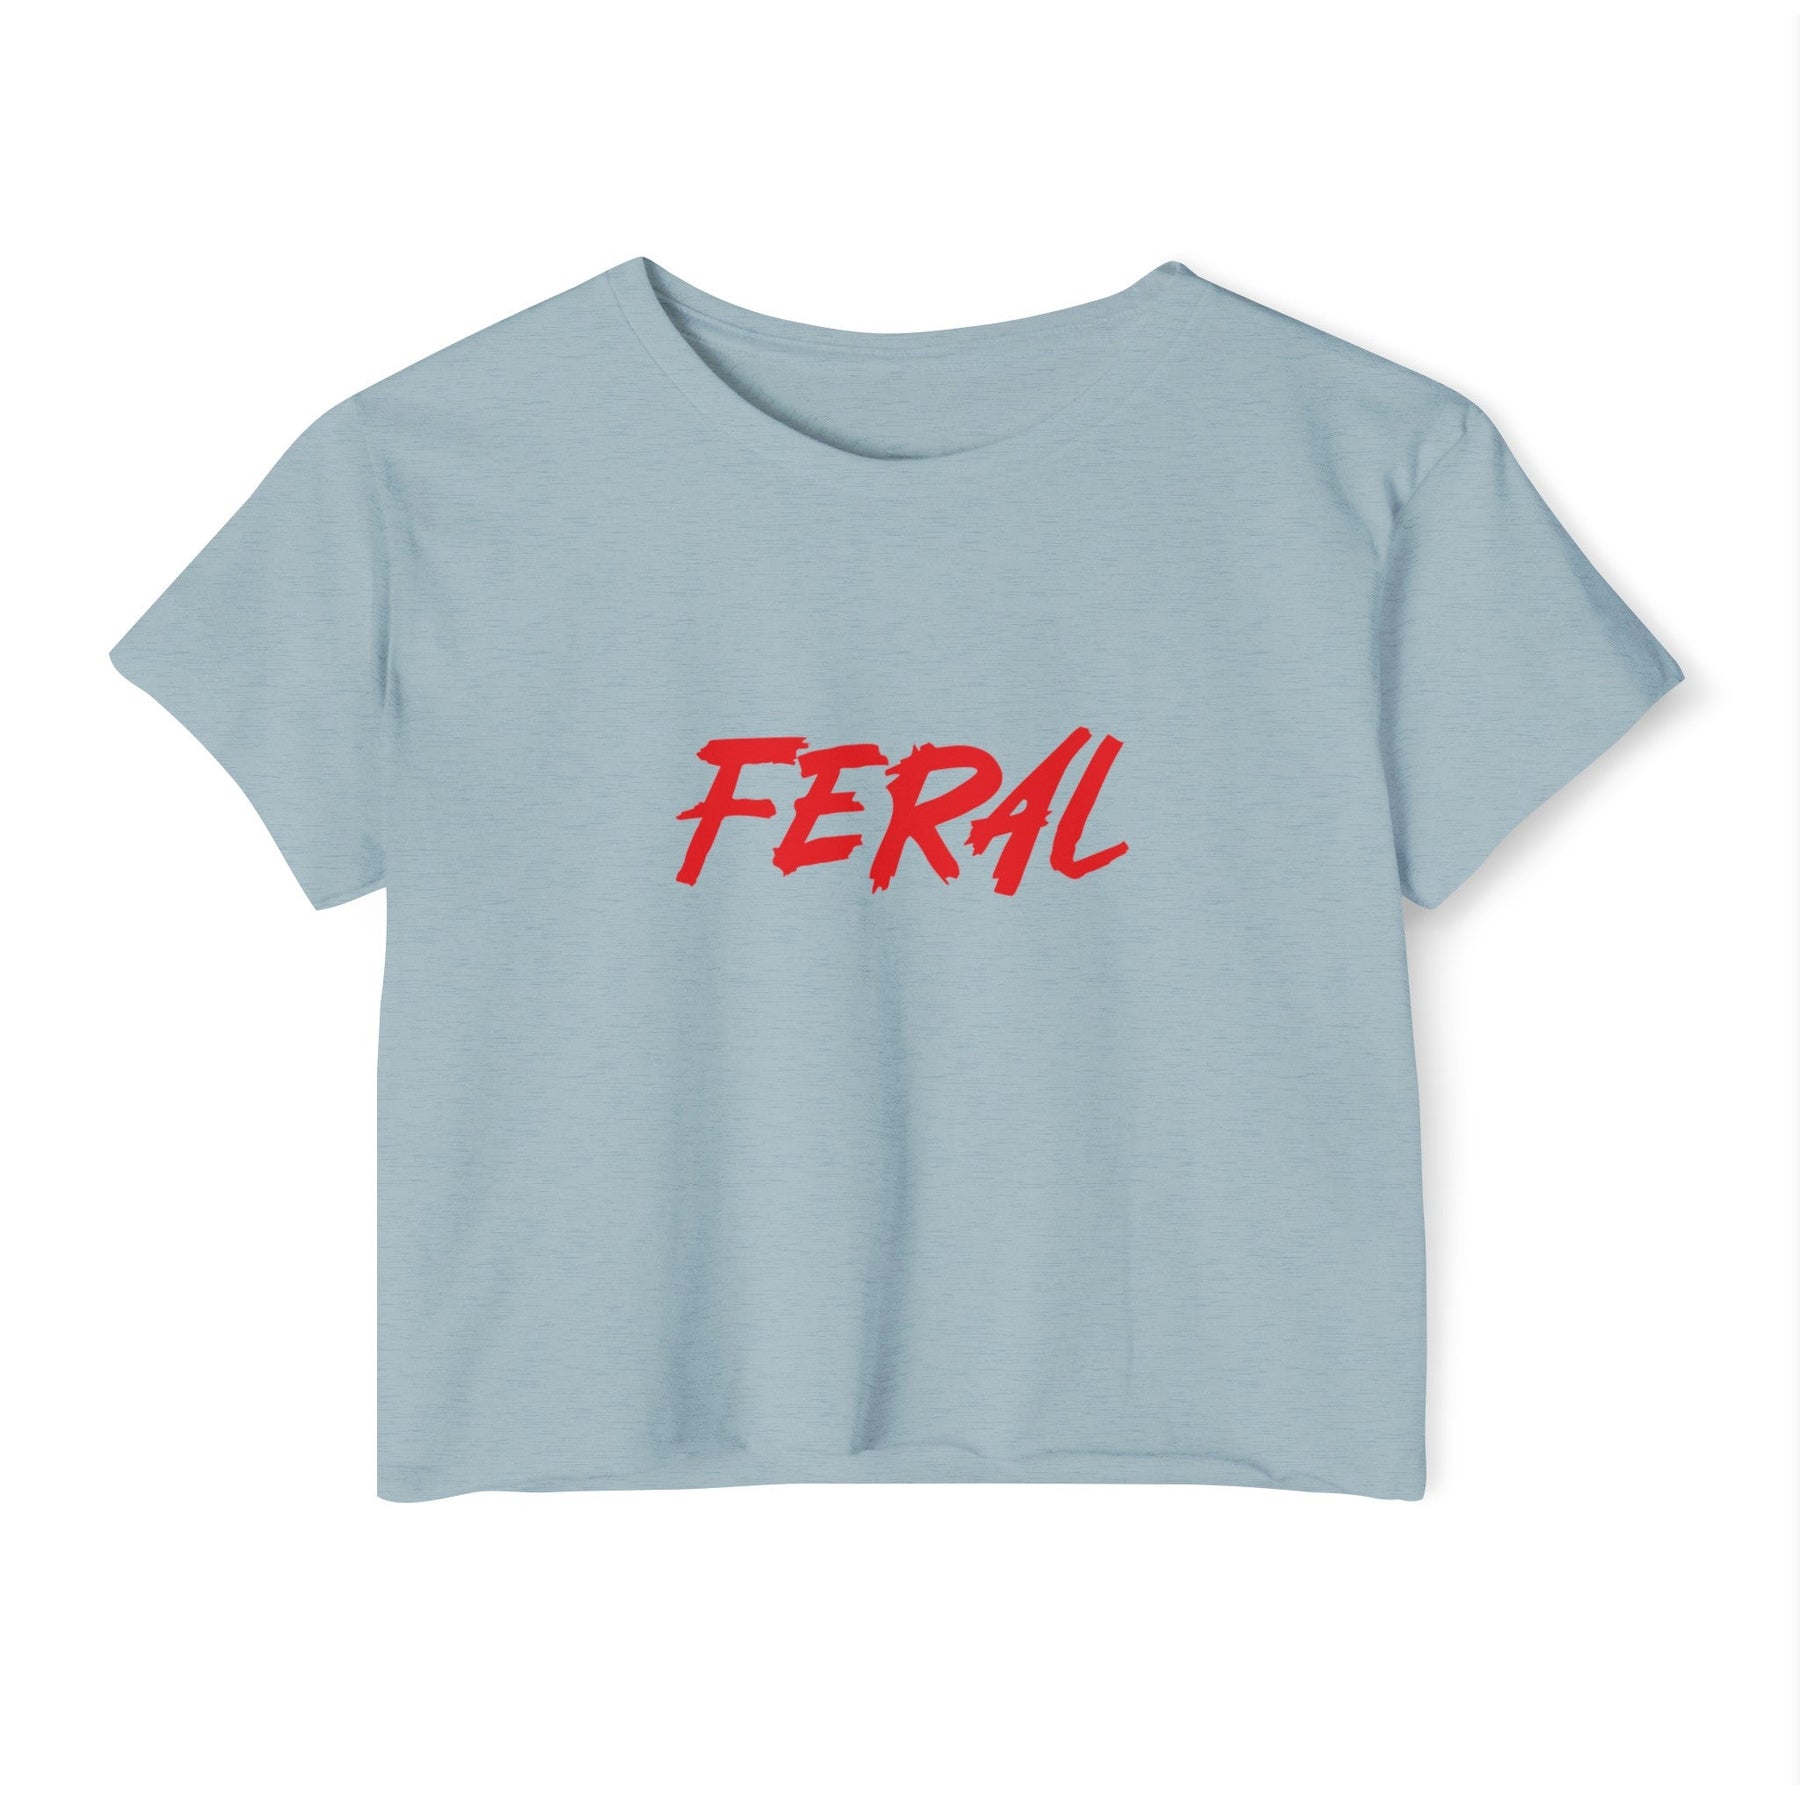 FERAL Women's Lightweight Crop Top - Goth Cloth Co.T - Shirt18821309353732438647